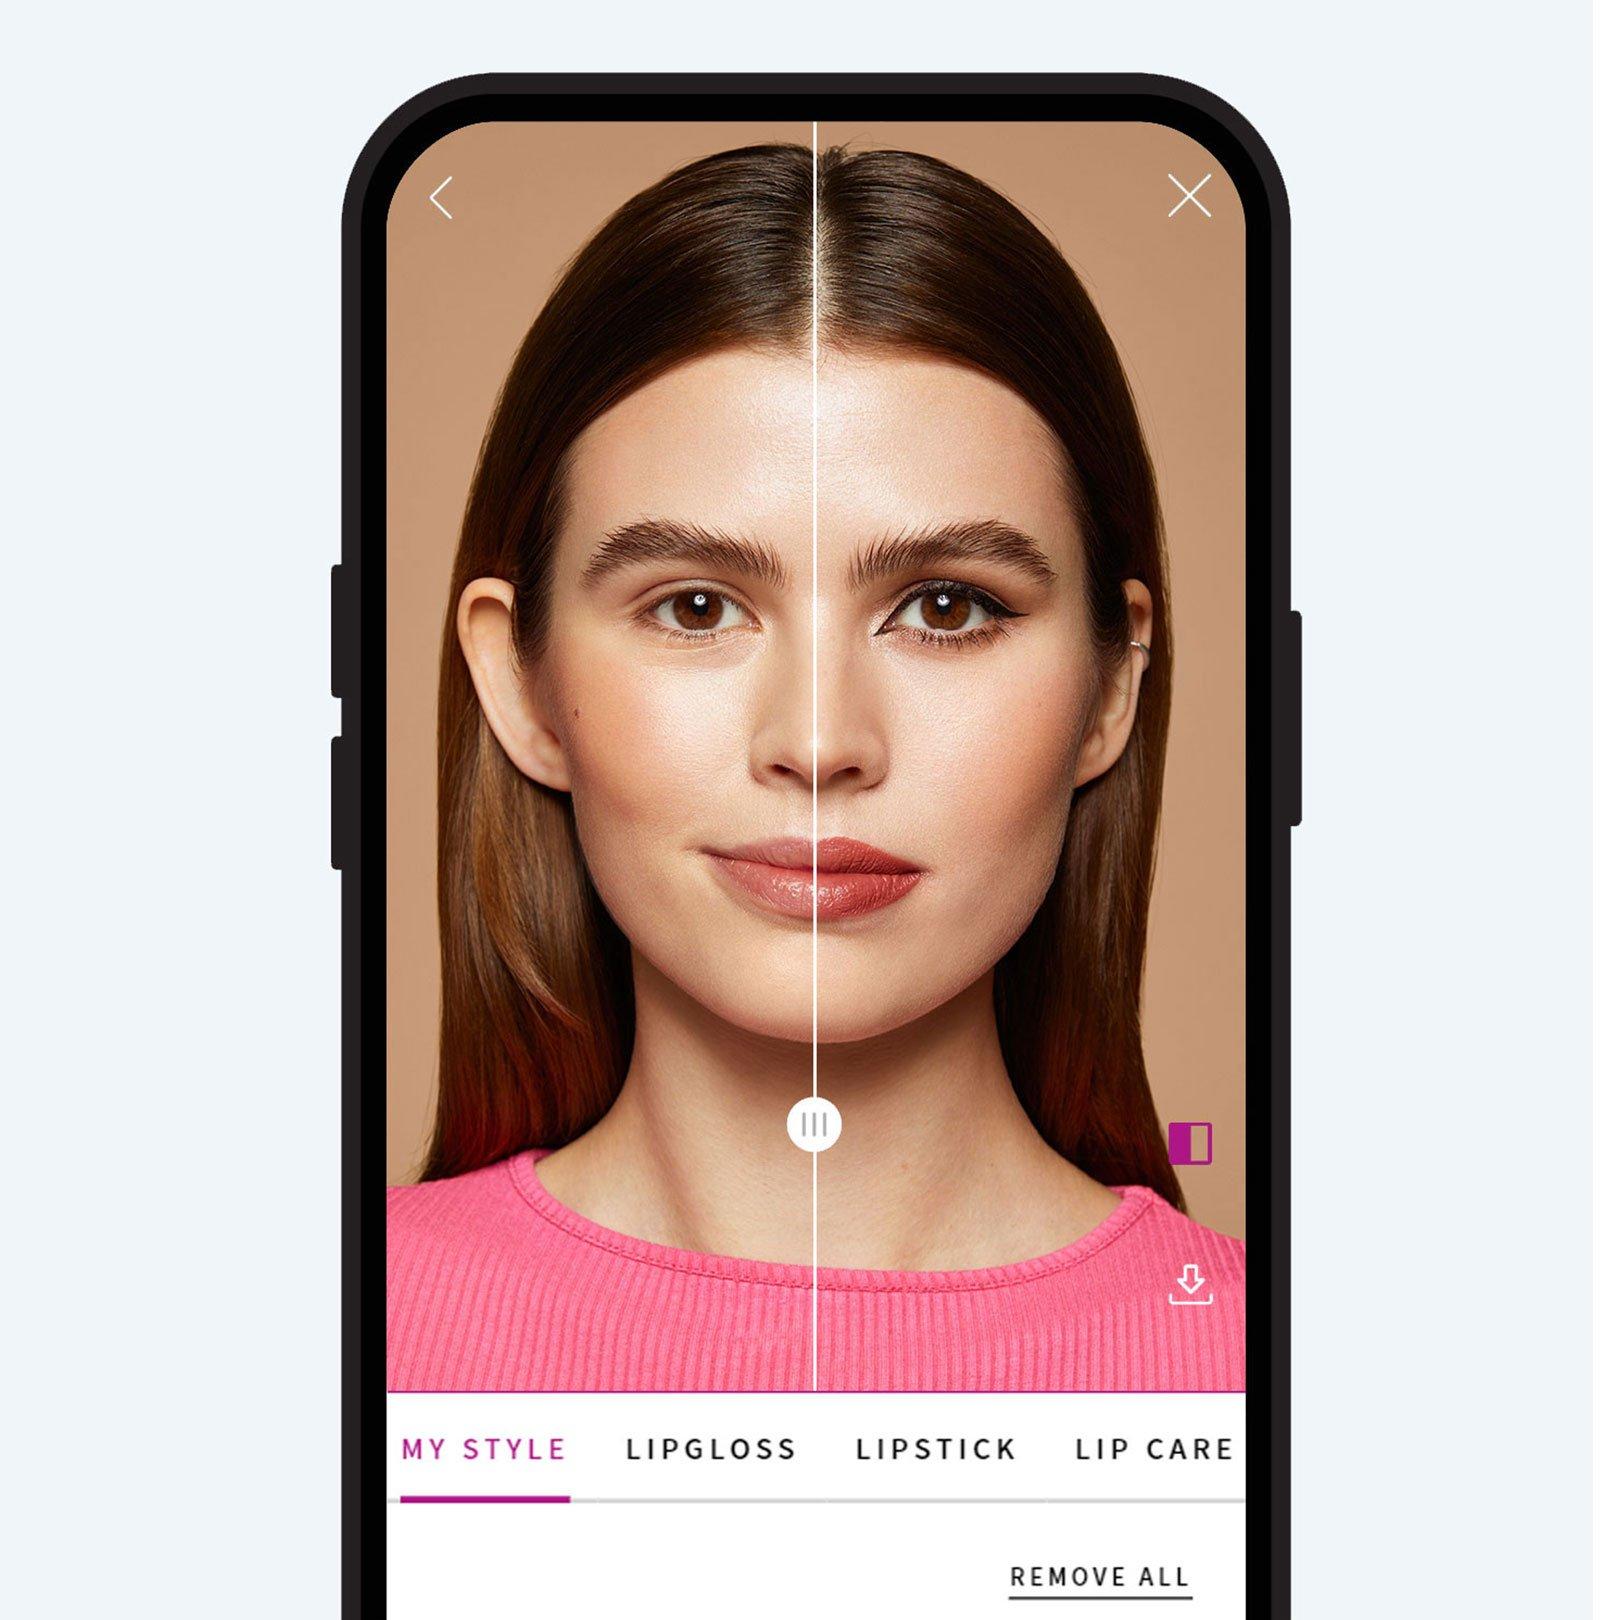 Virtuel makeuptest fra essence: Sammenlign før og efter